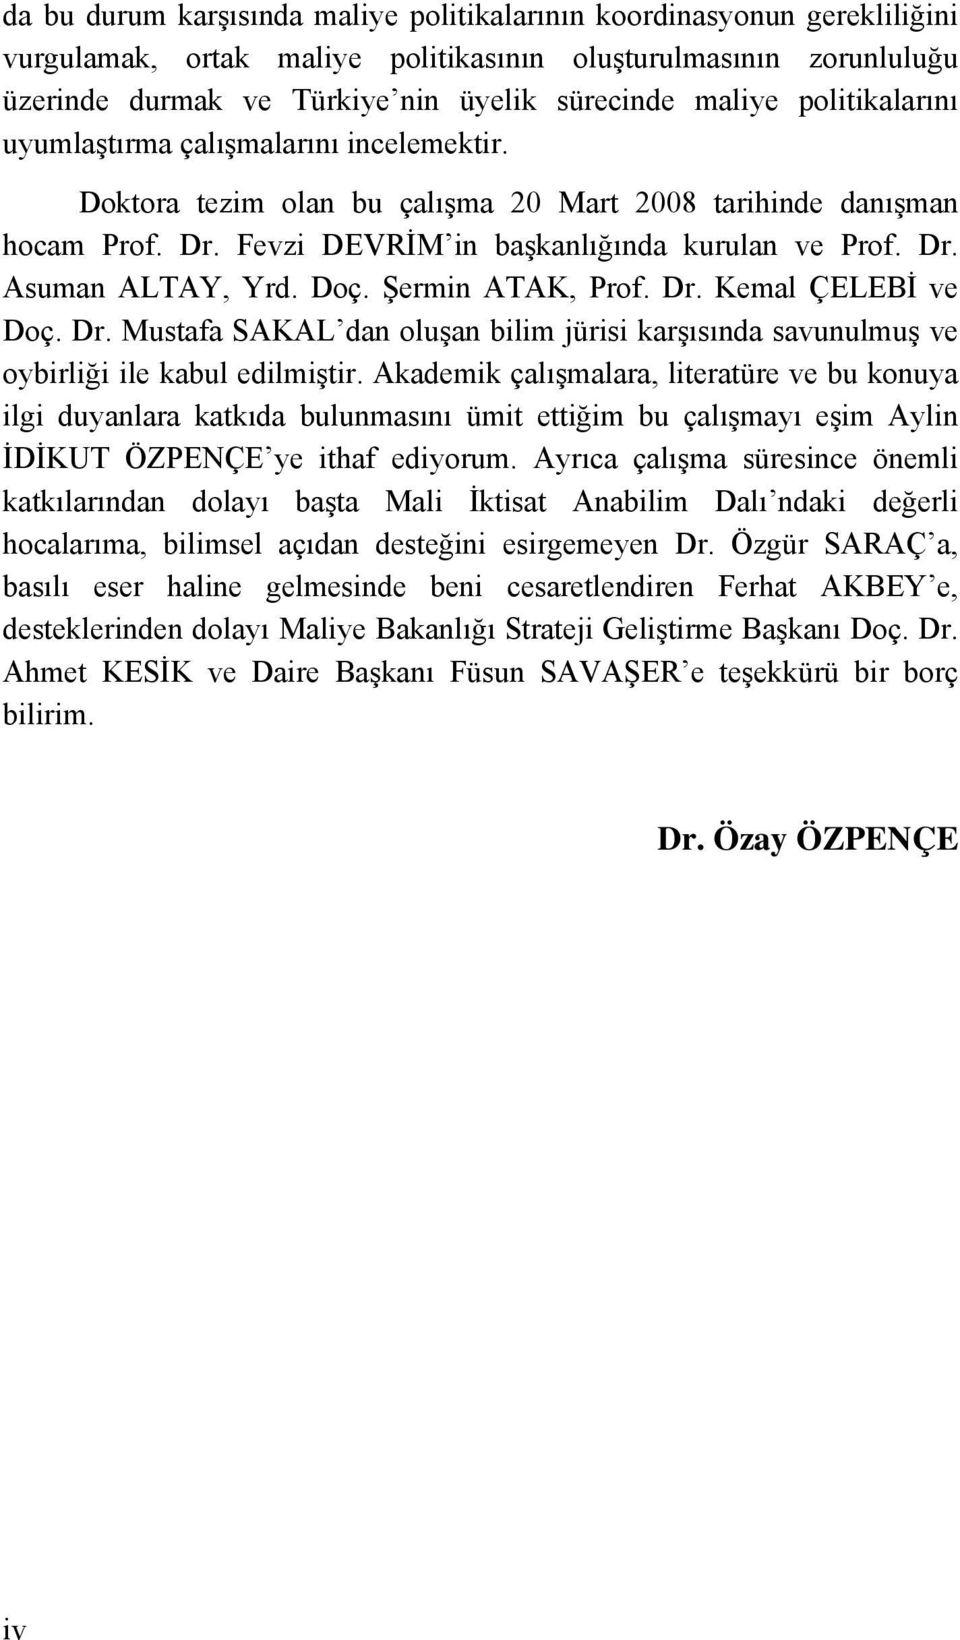 Doç. Şermin ATAK, Prof. Dr. Kemal ÇELEBİ ve Doç. Dr. Mustafa SAKAL dan oluşan bilim jürisi karşısında savunulmuş ve oybirliği ile kabul edilmiştir.